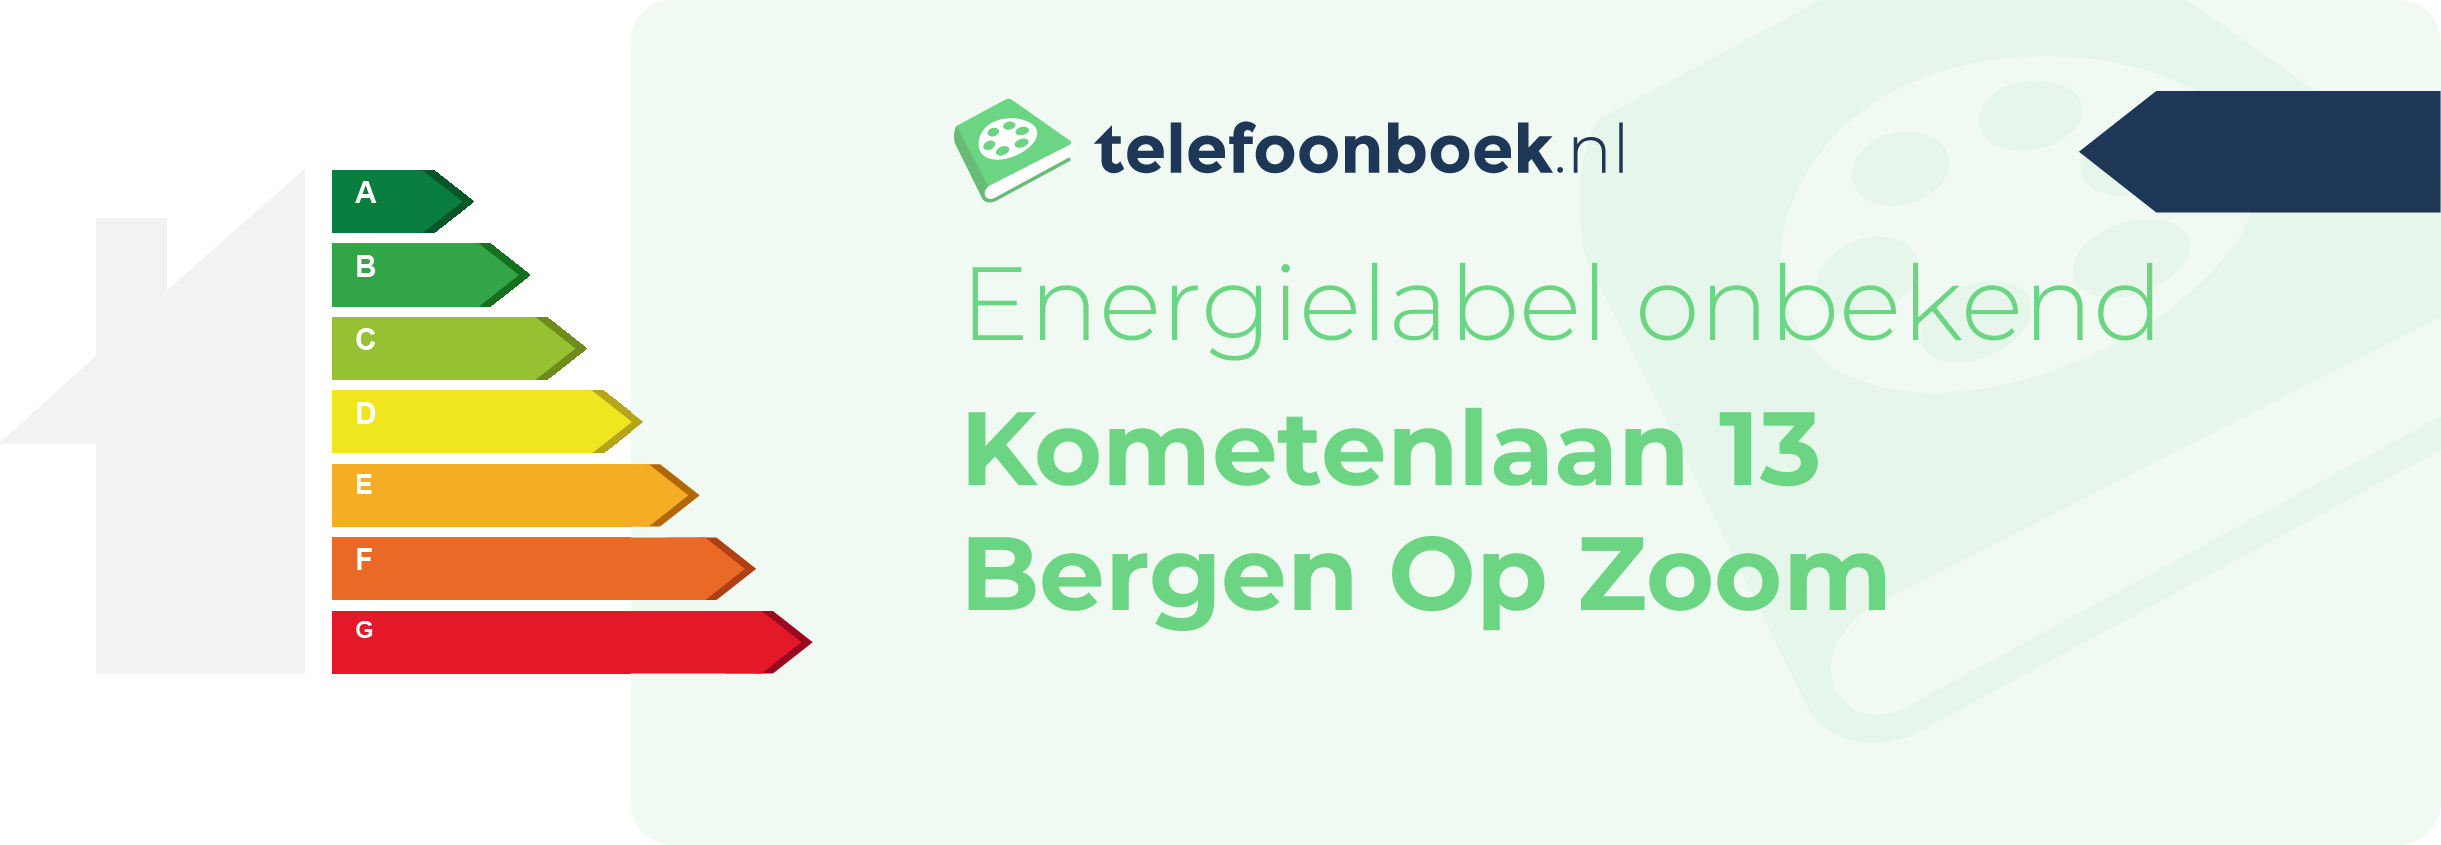 Energielabel Kometenlaan 13 Bergen Op Zoom